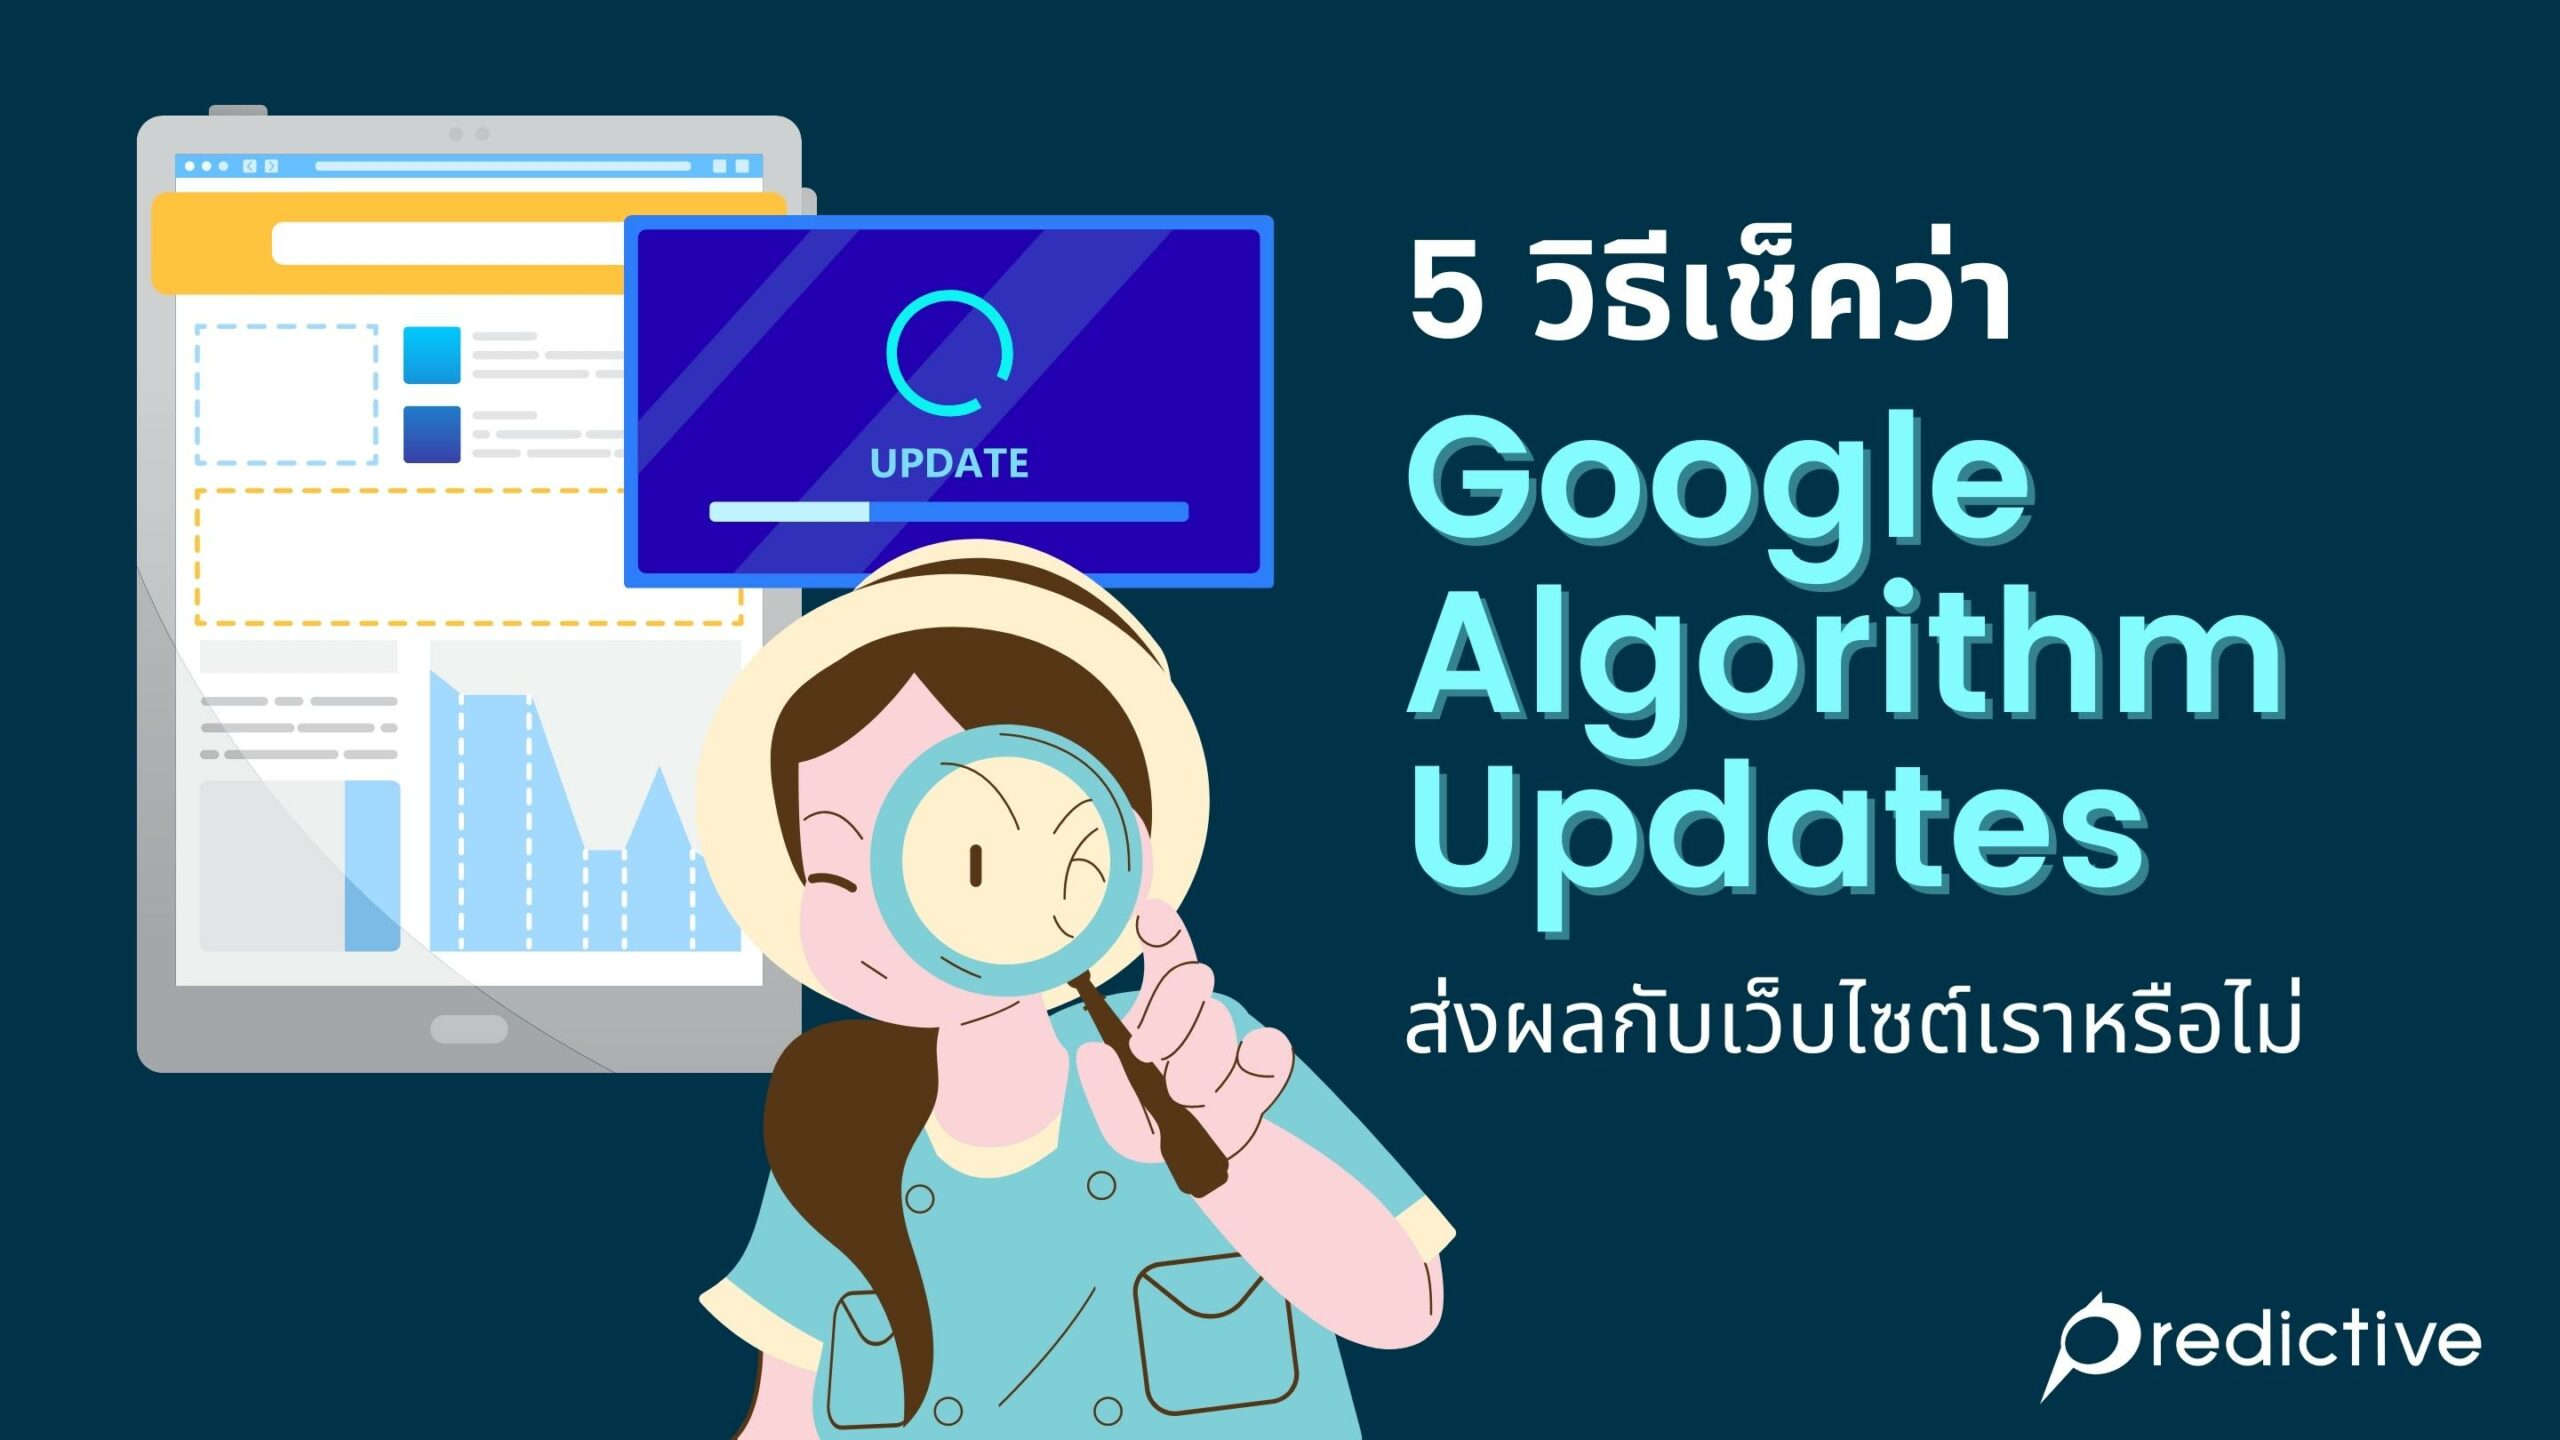 5 วิธีเช็คว่า Google Algorithm Updates ส่งผลกับเว็บไซต์เราหรือไม่ -  Predictive, Digital Analytics, Ux & Strategy Consulting